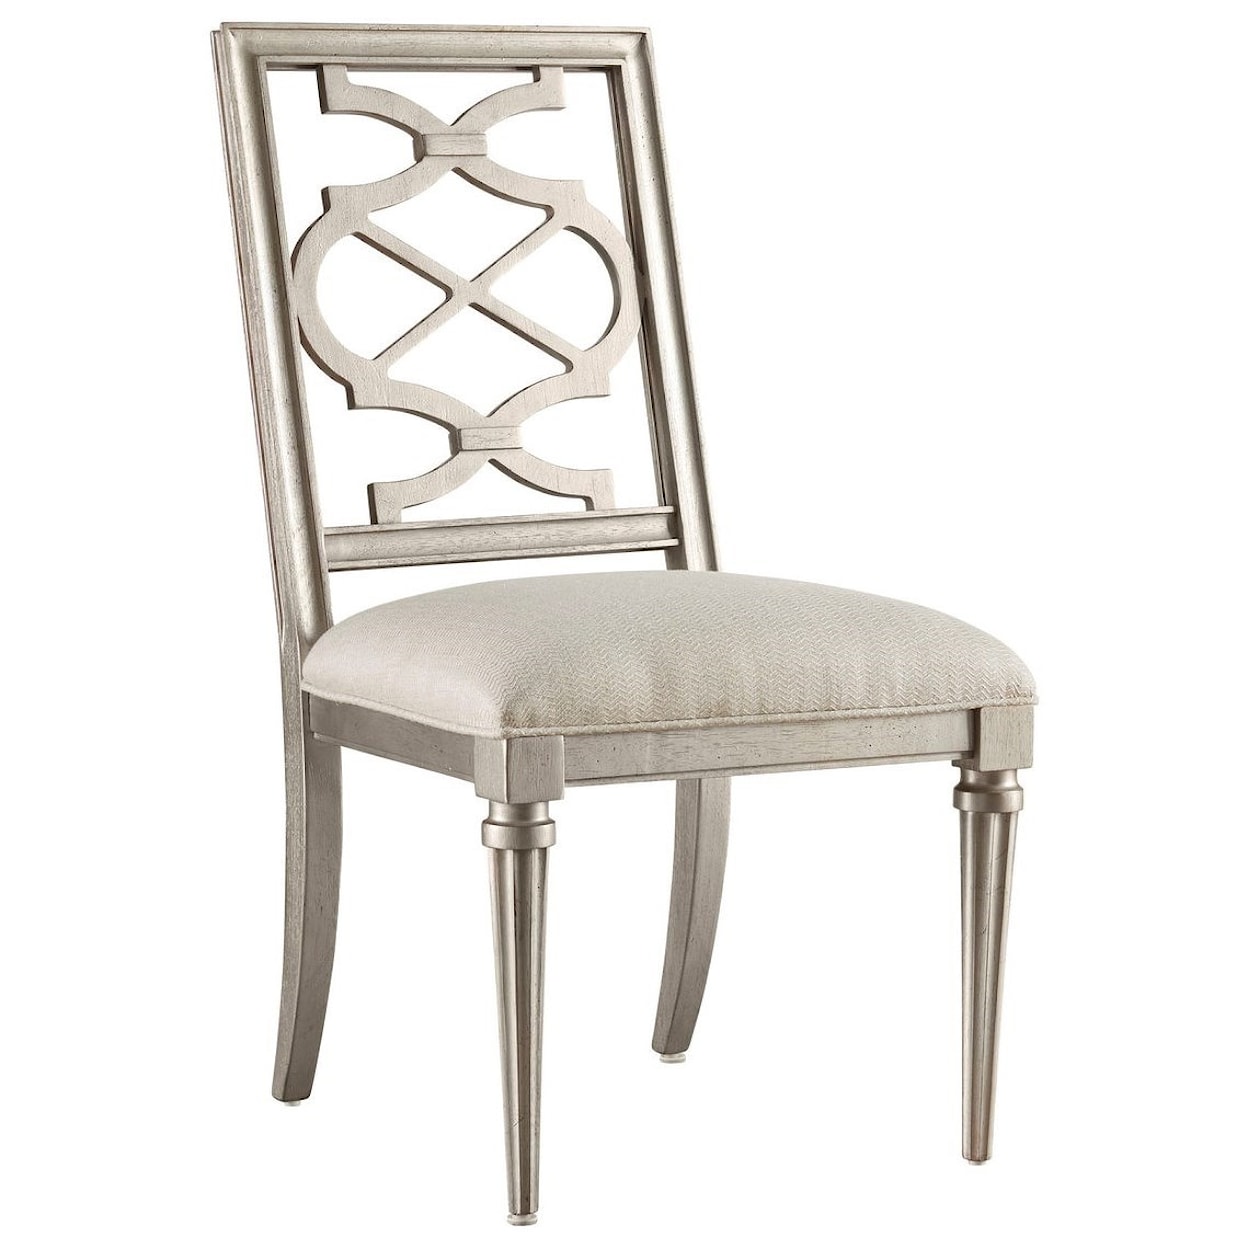 A.R.T. Furniture Inc Morrissey Blake Side Chair